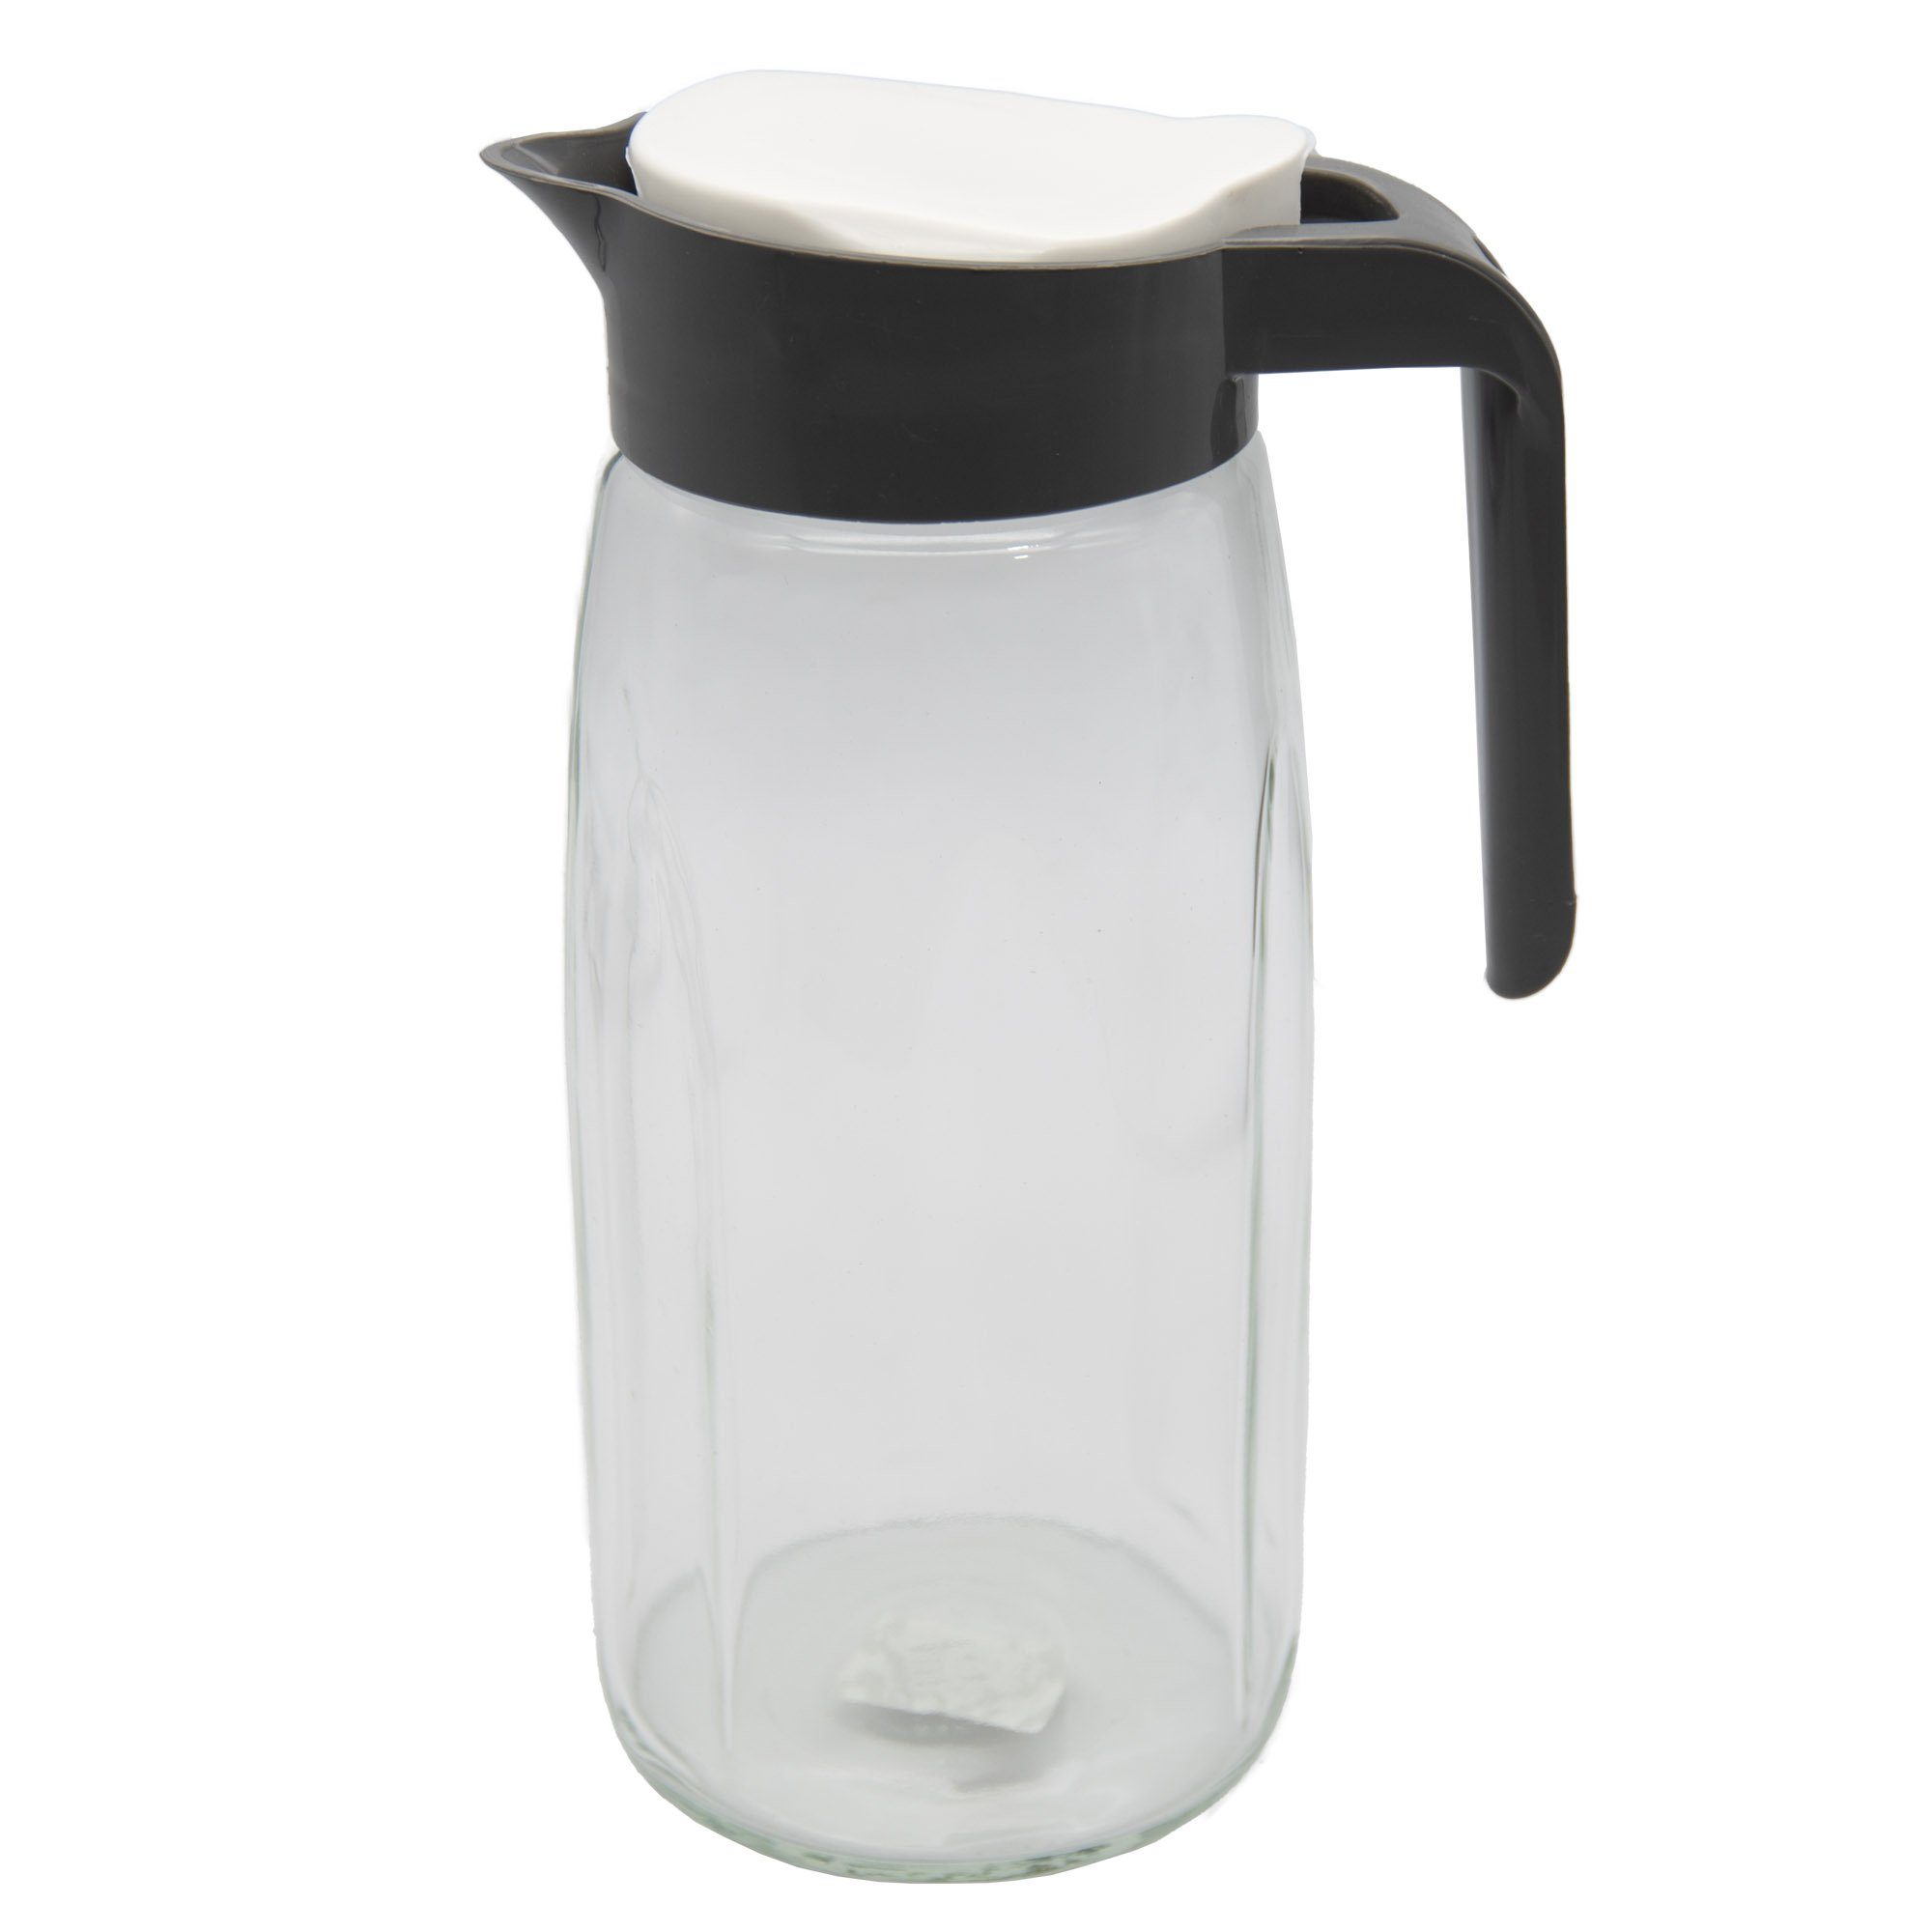 conkor Wasserkrug Glaskaraffe Glas Karaffe Krug 1,45L Wasserkaraffe, Deckel, Glaskrug, Kanne, Saftkrug Grau